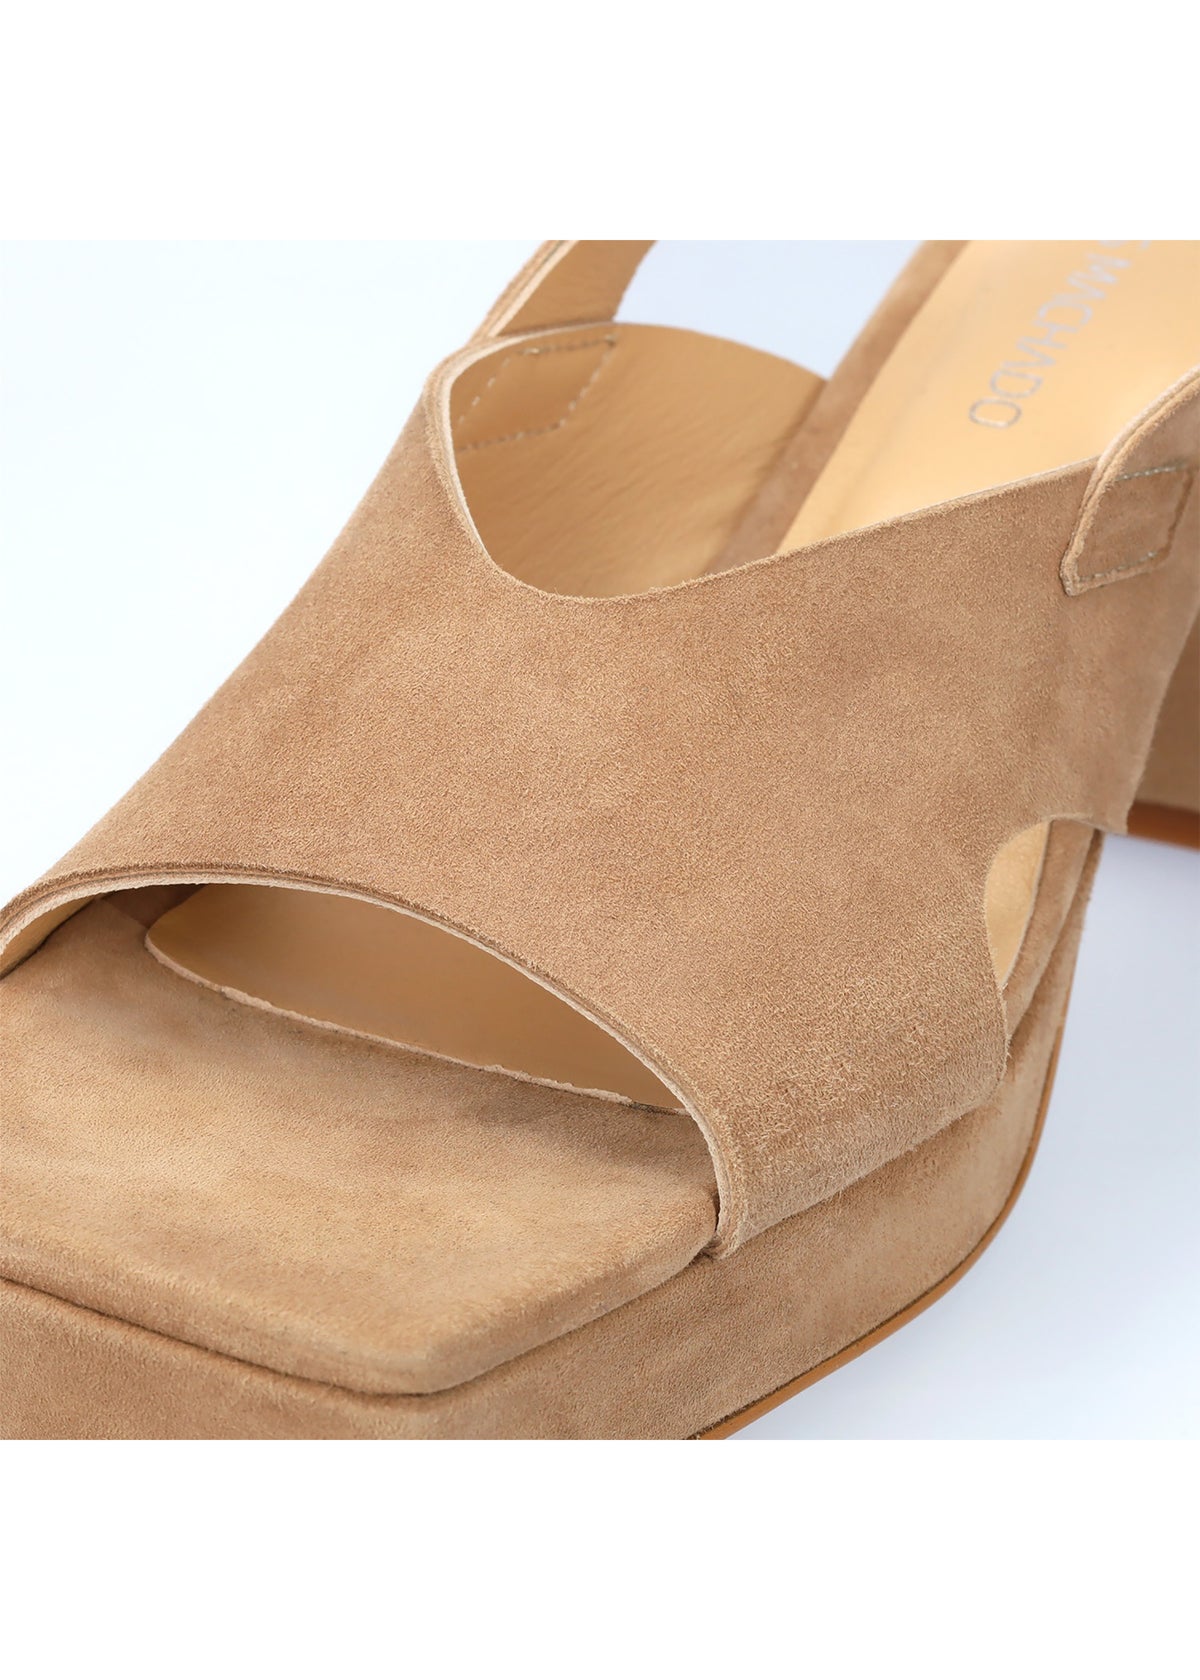 Sandaler med stilettklack och platåsula - Rita, beige nubuckläder